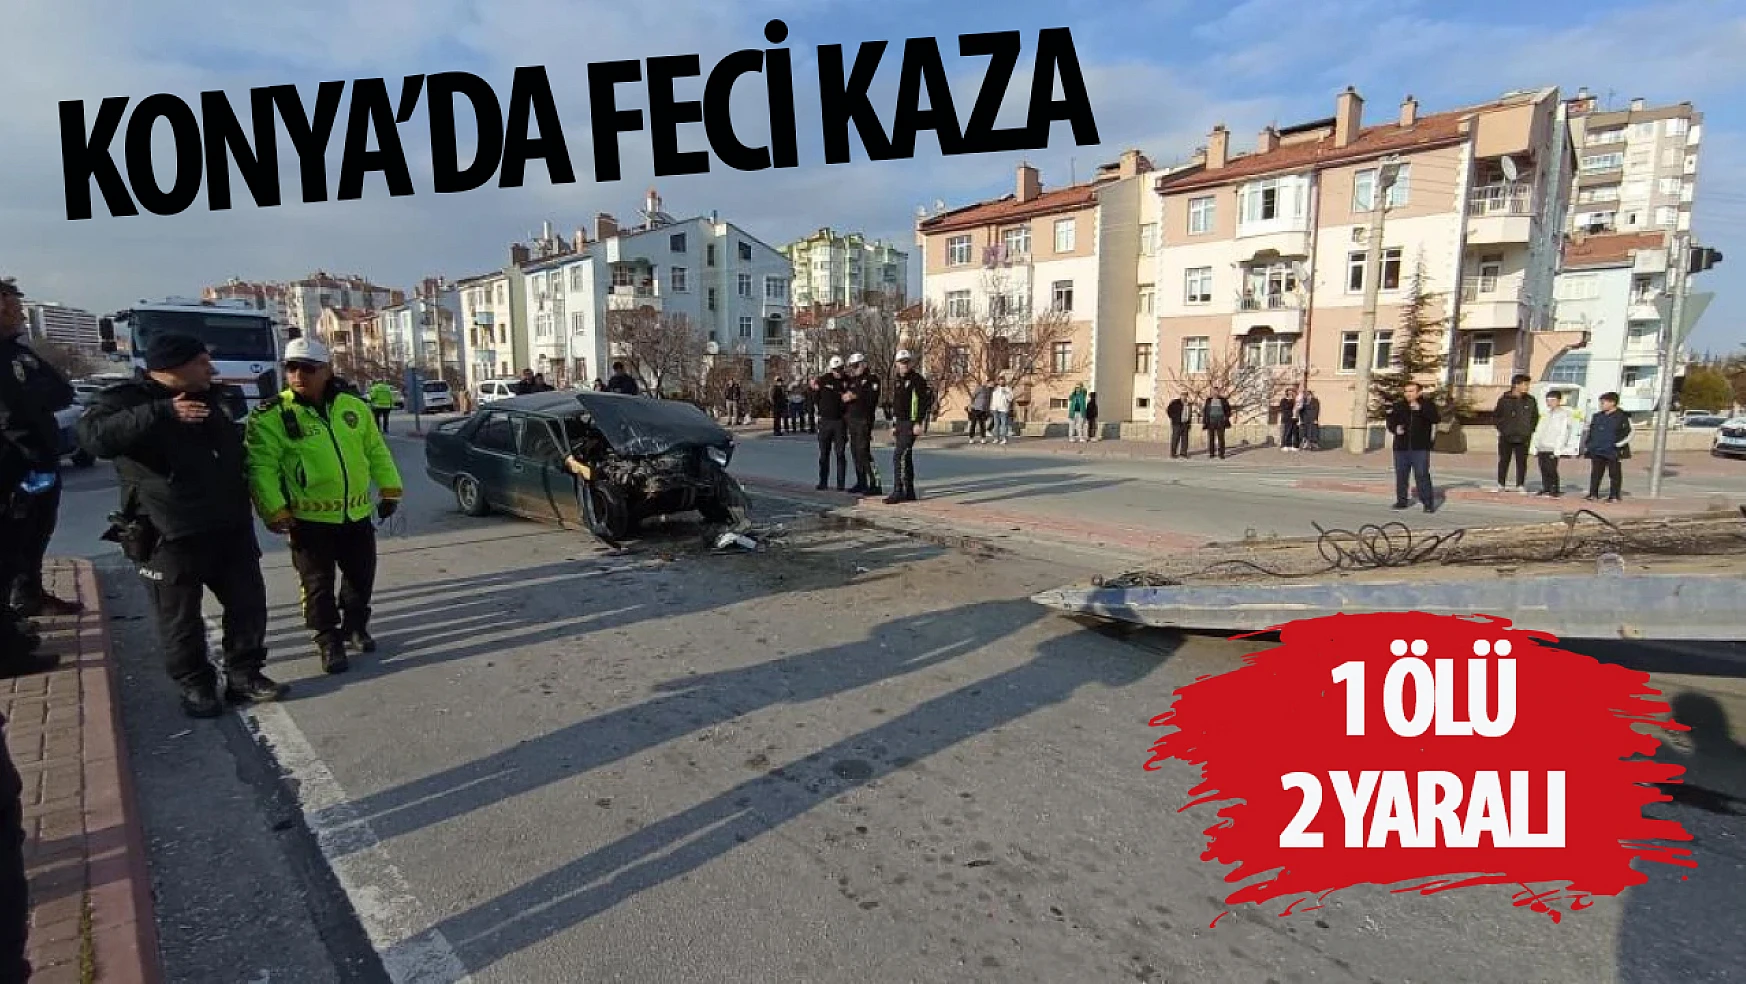 Konya'da feci kaza! Otomobil arkadan minibüse çarptı: 1 ölü, 2 yaralı